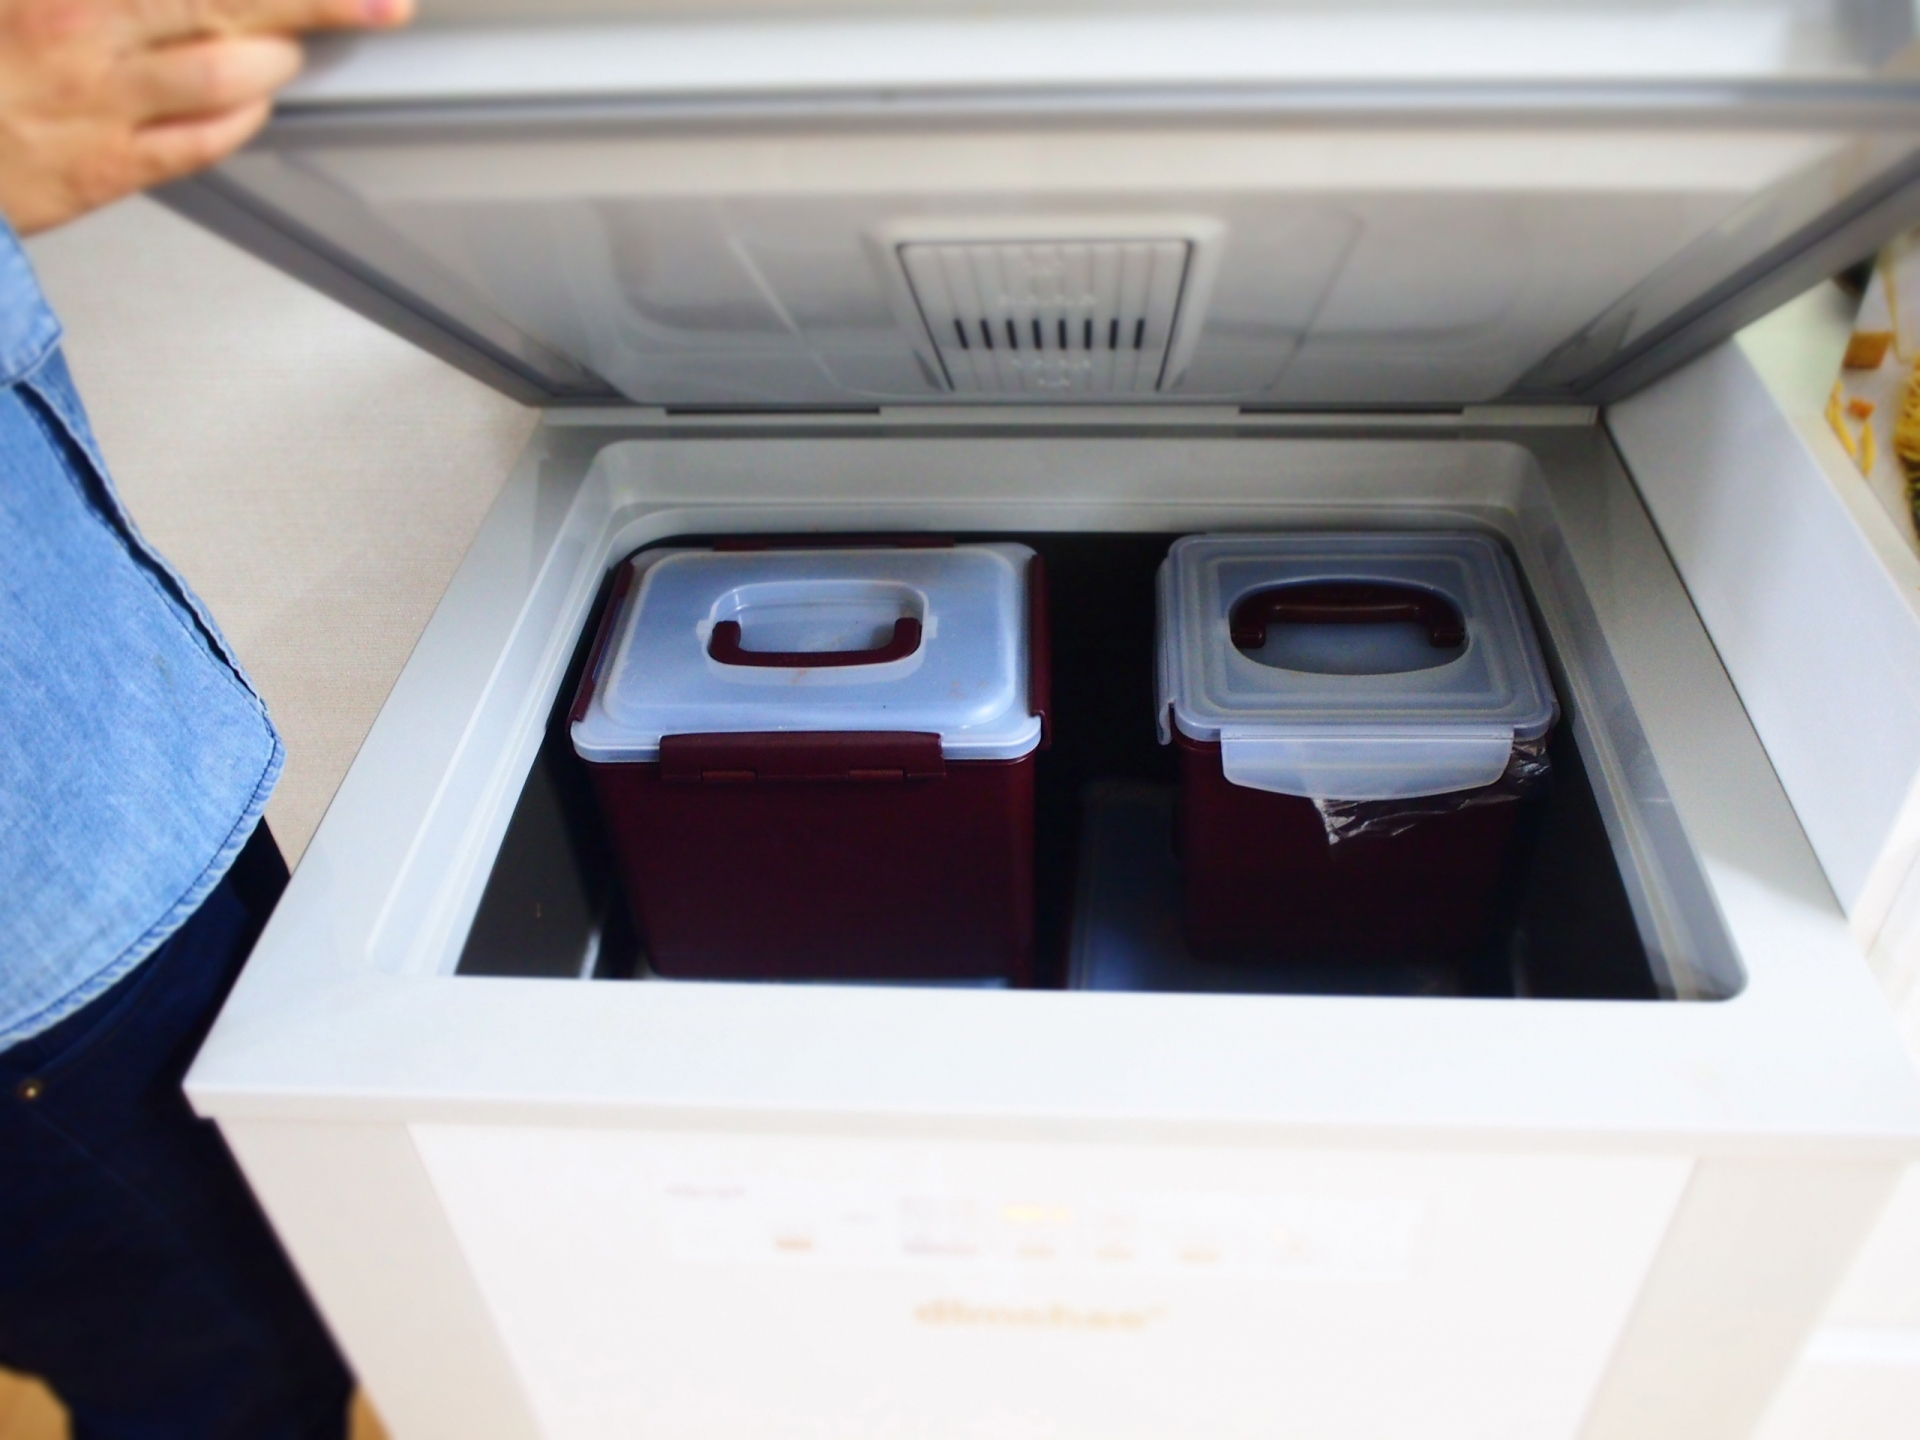 カセットガス式冷蔵庫とは 仕組み 原理や使い方からおすすめ商品まで紹介 タヌドア